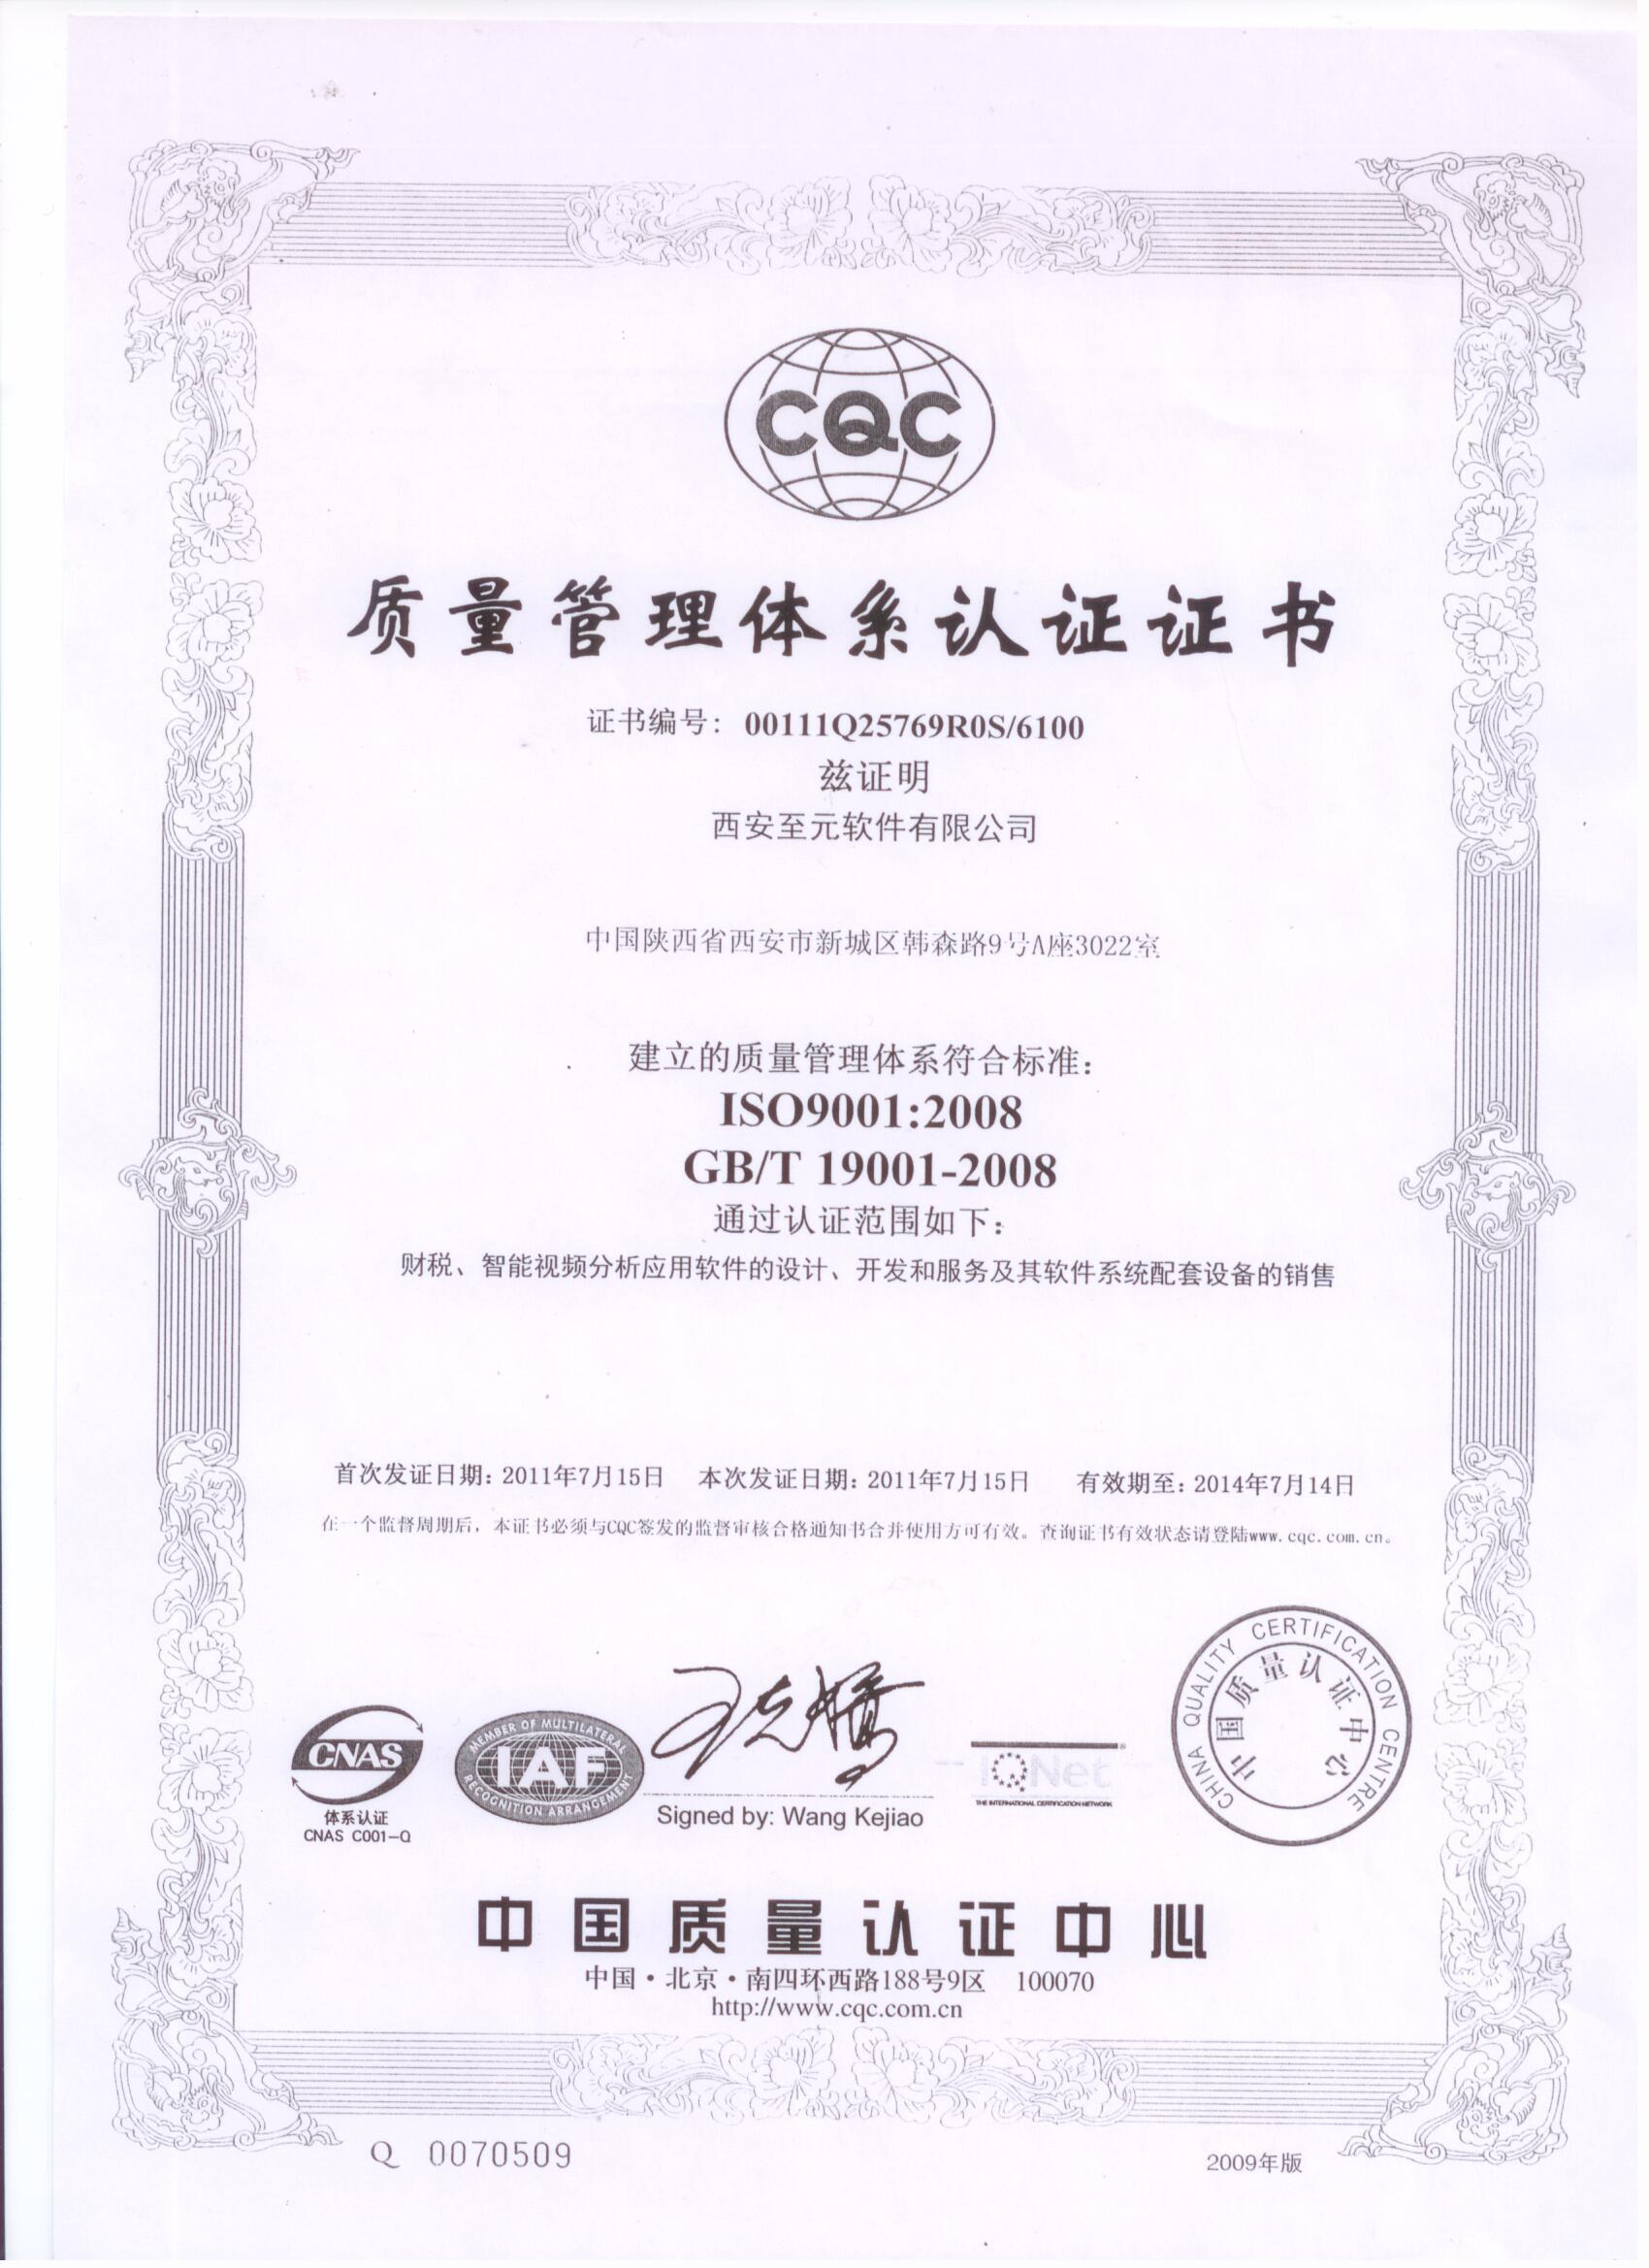 西安至元ISO认证证书